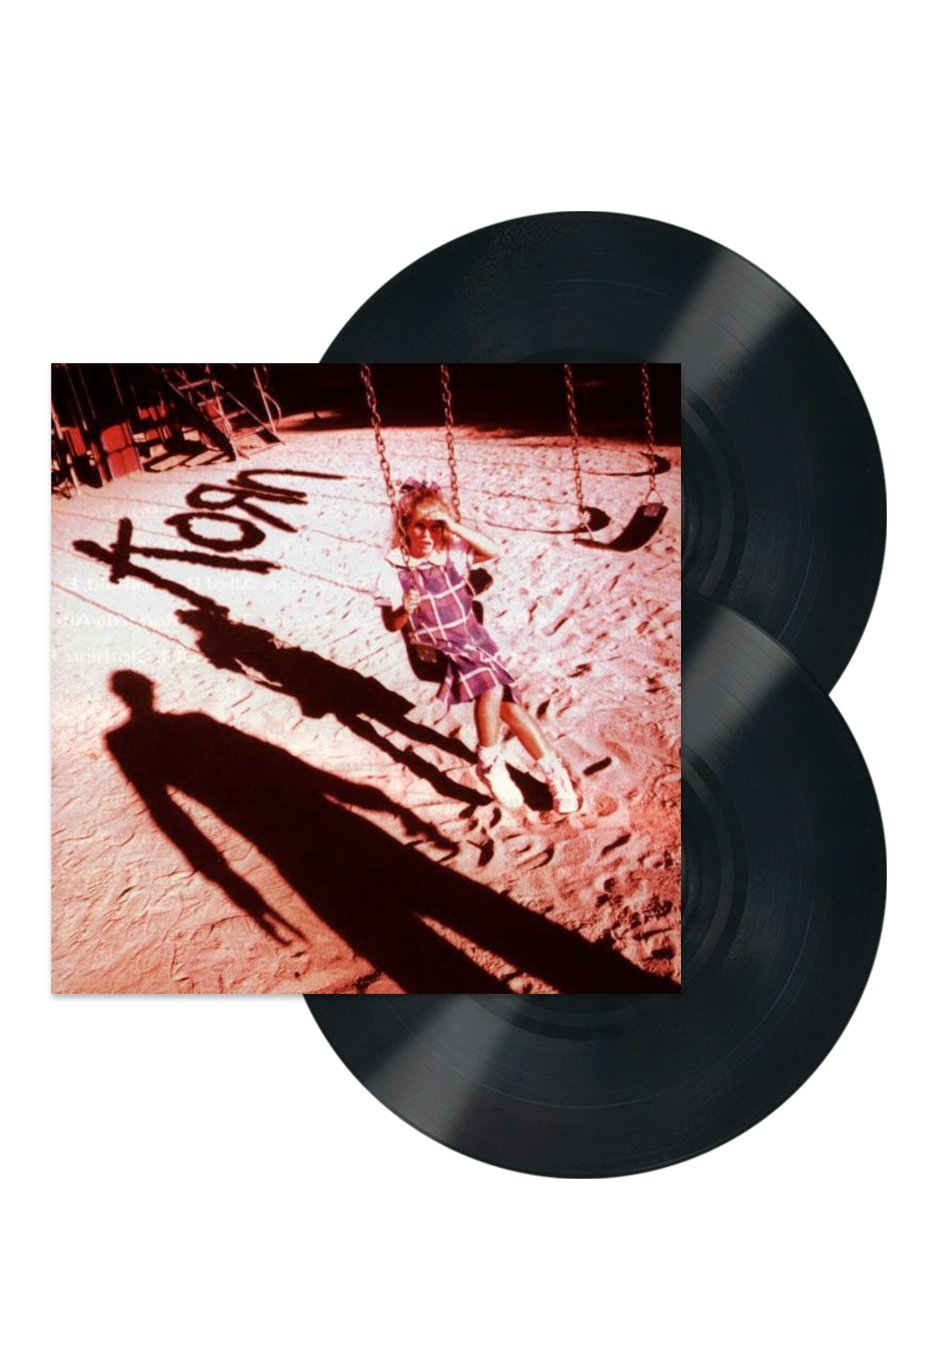 Korn - Korn - 2 Vinyl